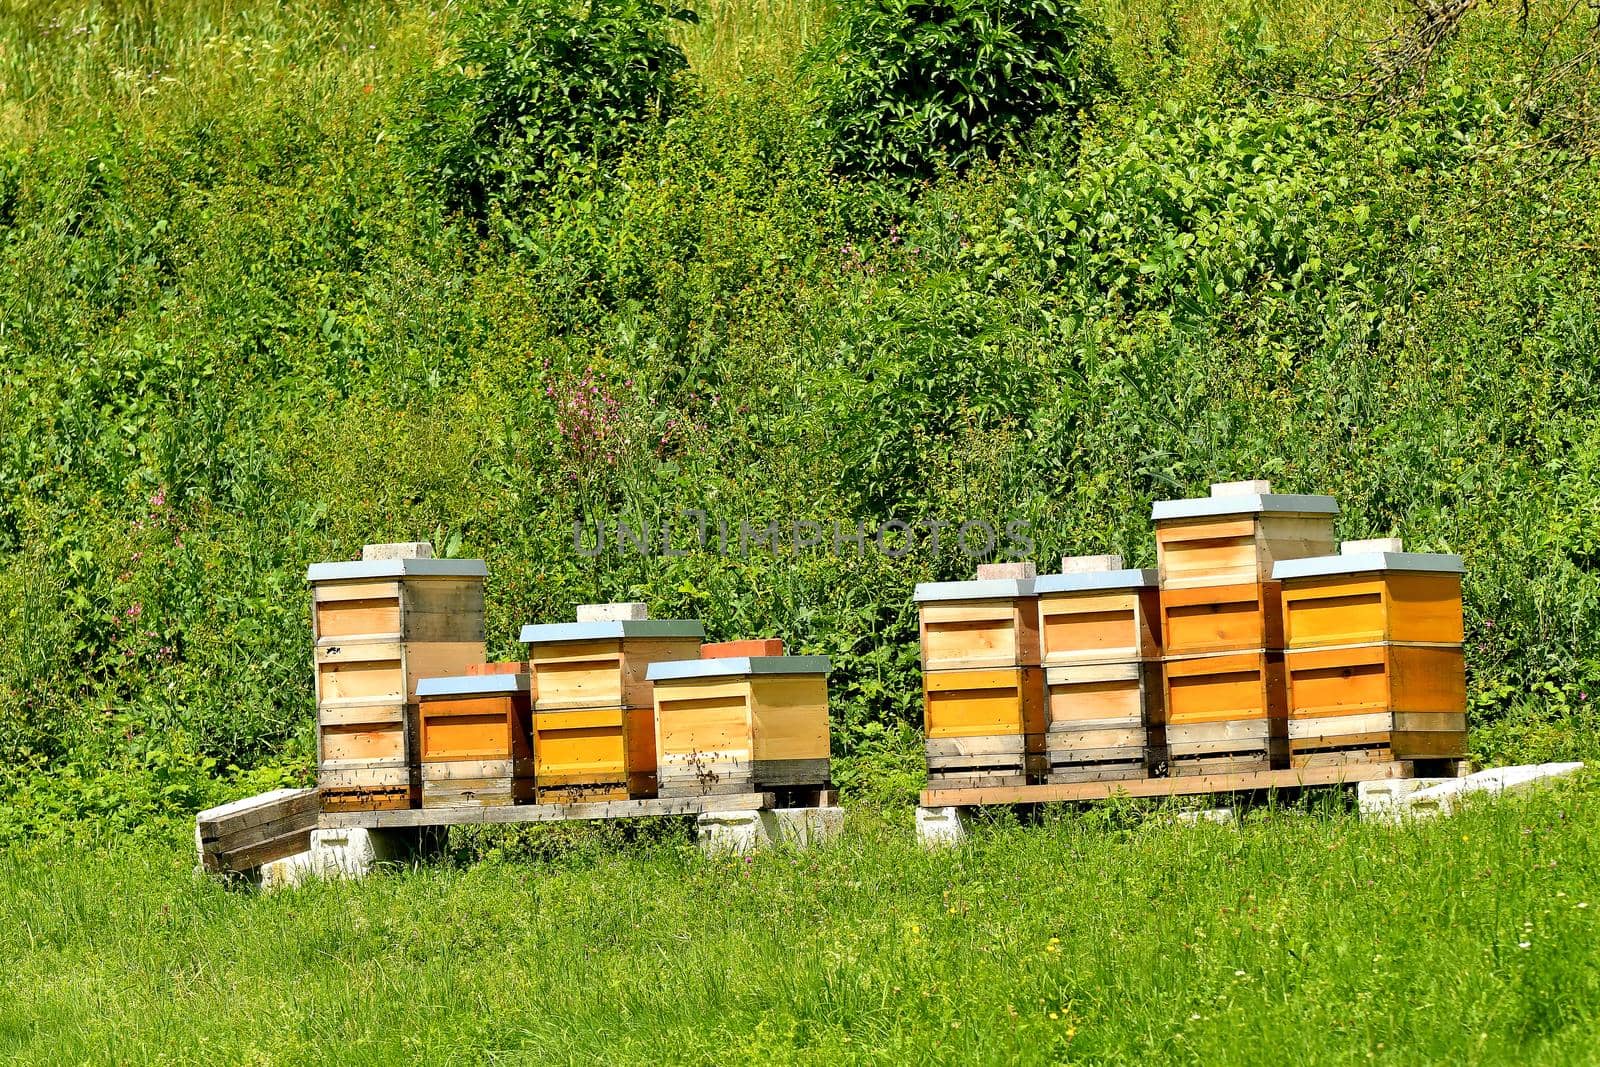 beehives in a meadow in summertime in Germany by Jochen